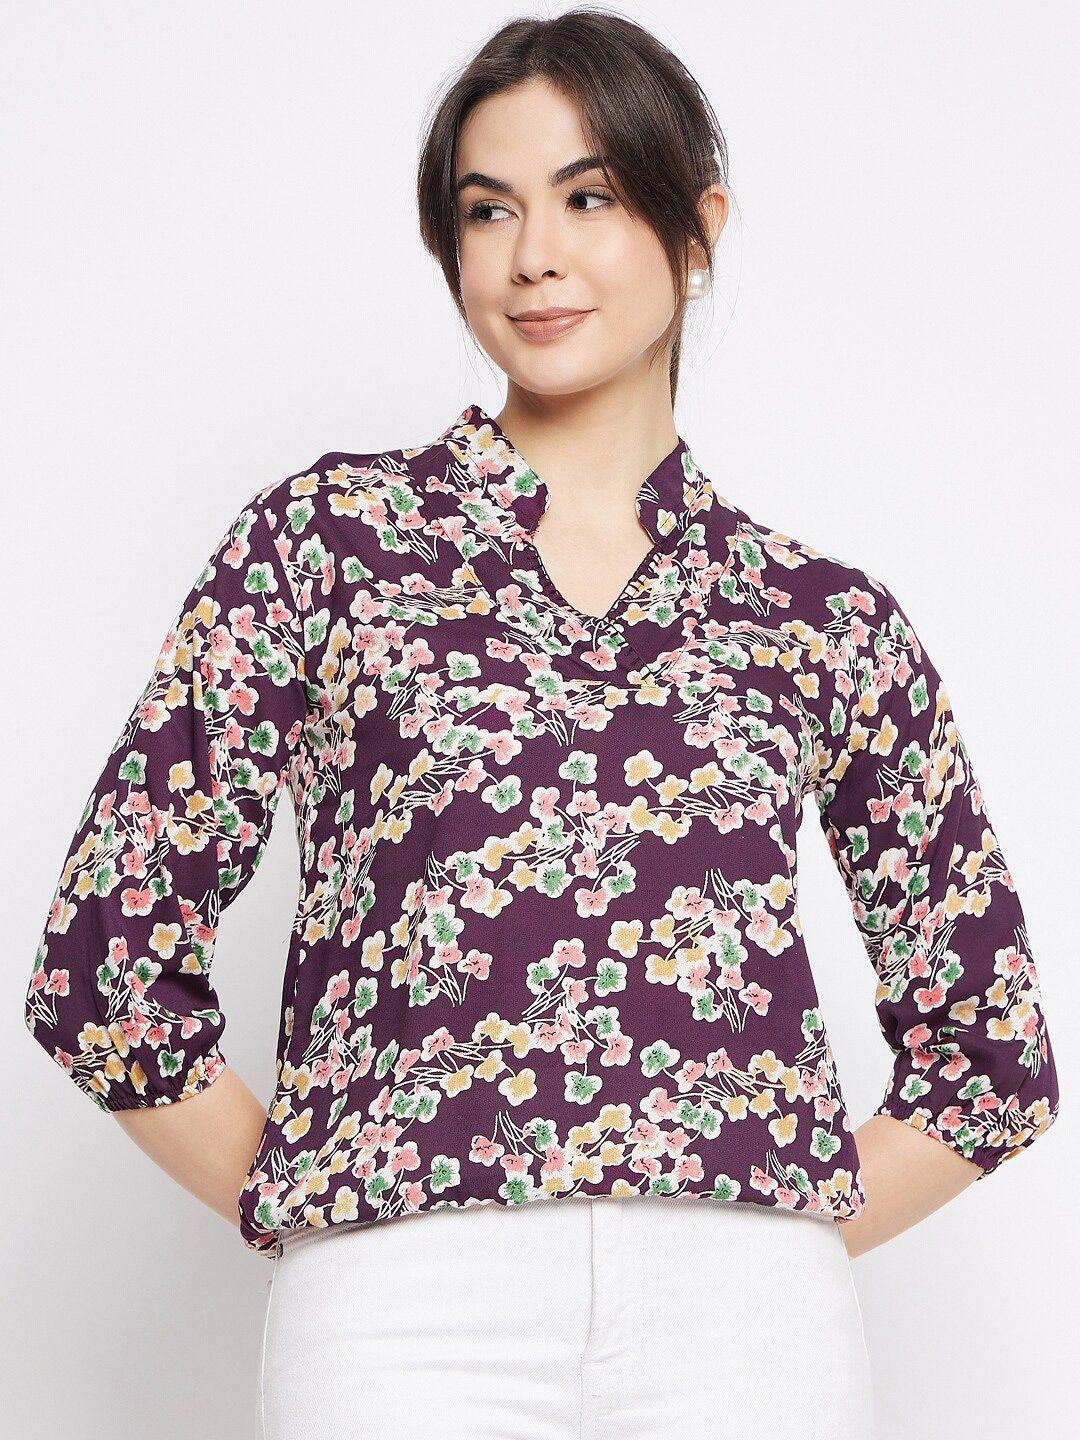 mayra floral printed mandarin collar shirt style top